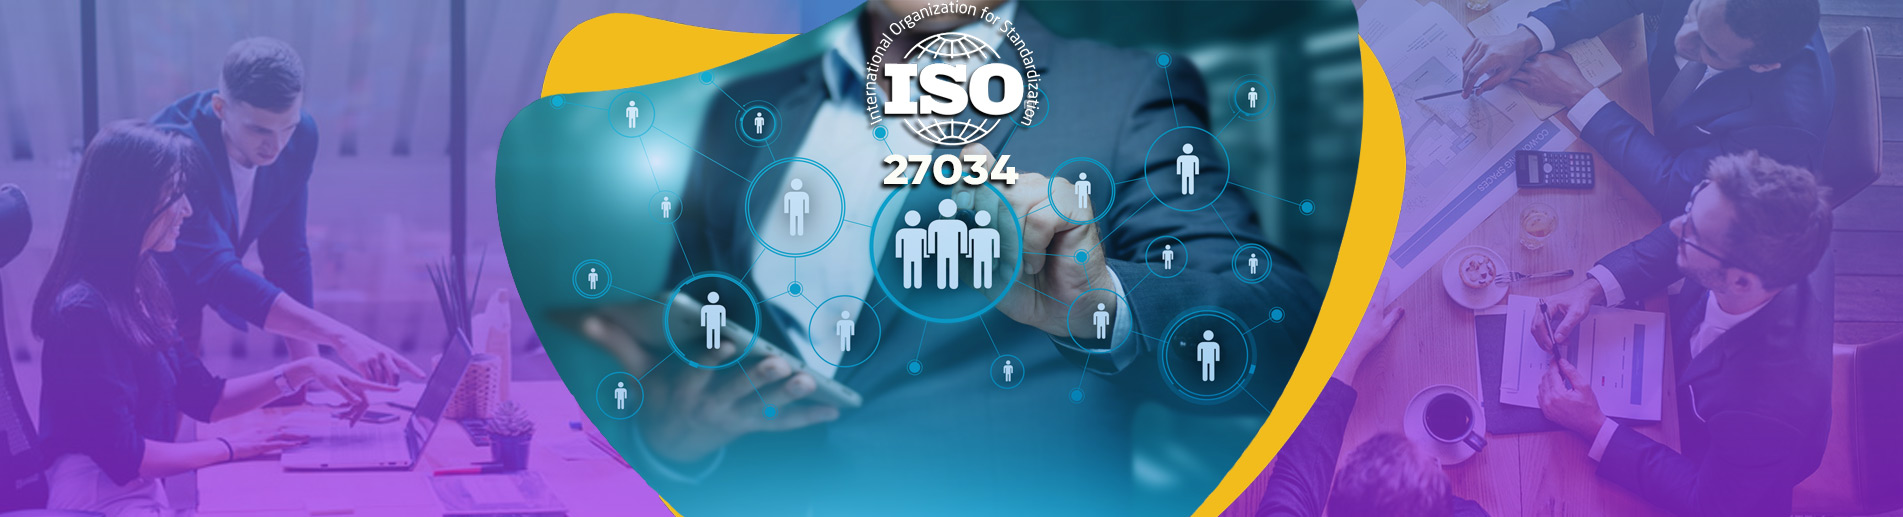 ISO 27034 Uygulama Yönetim Sistemleri